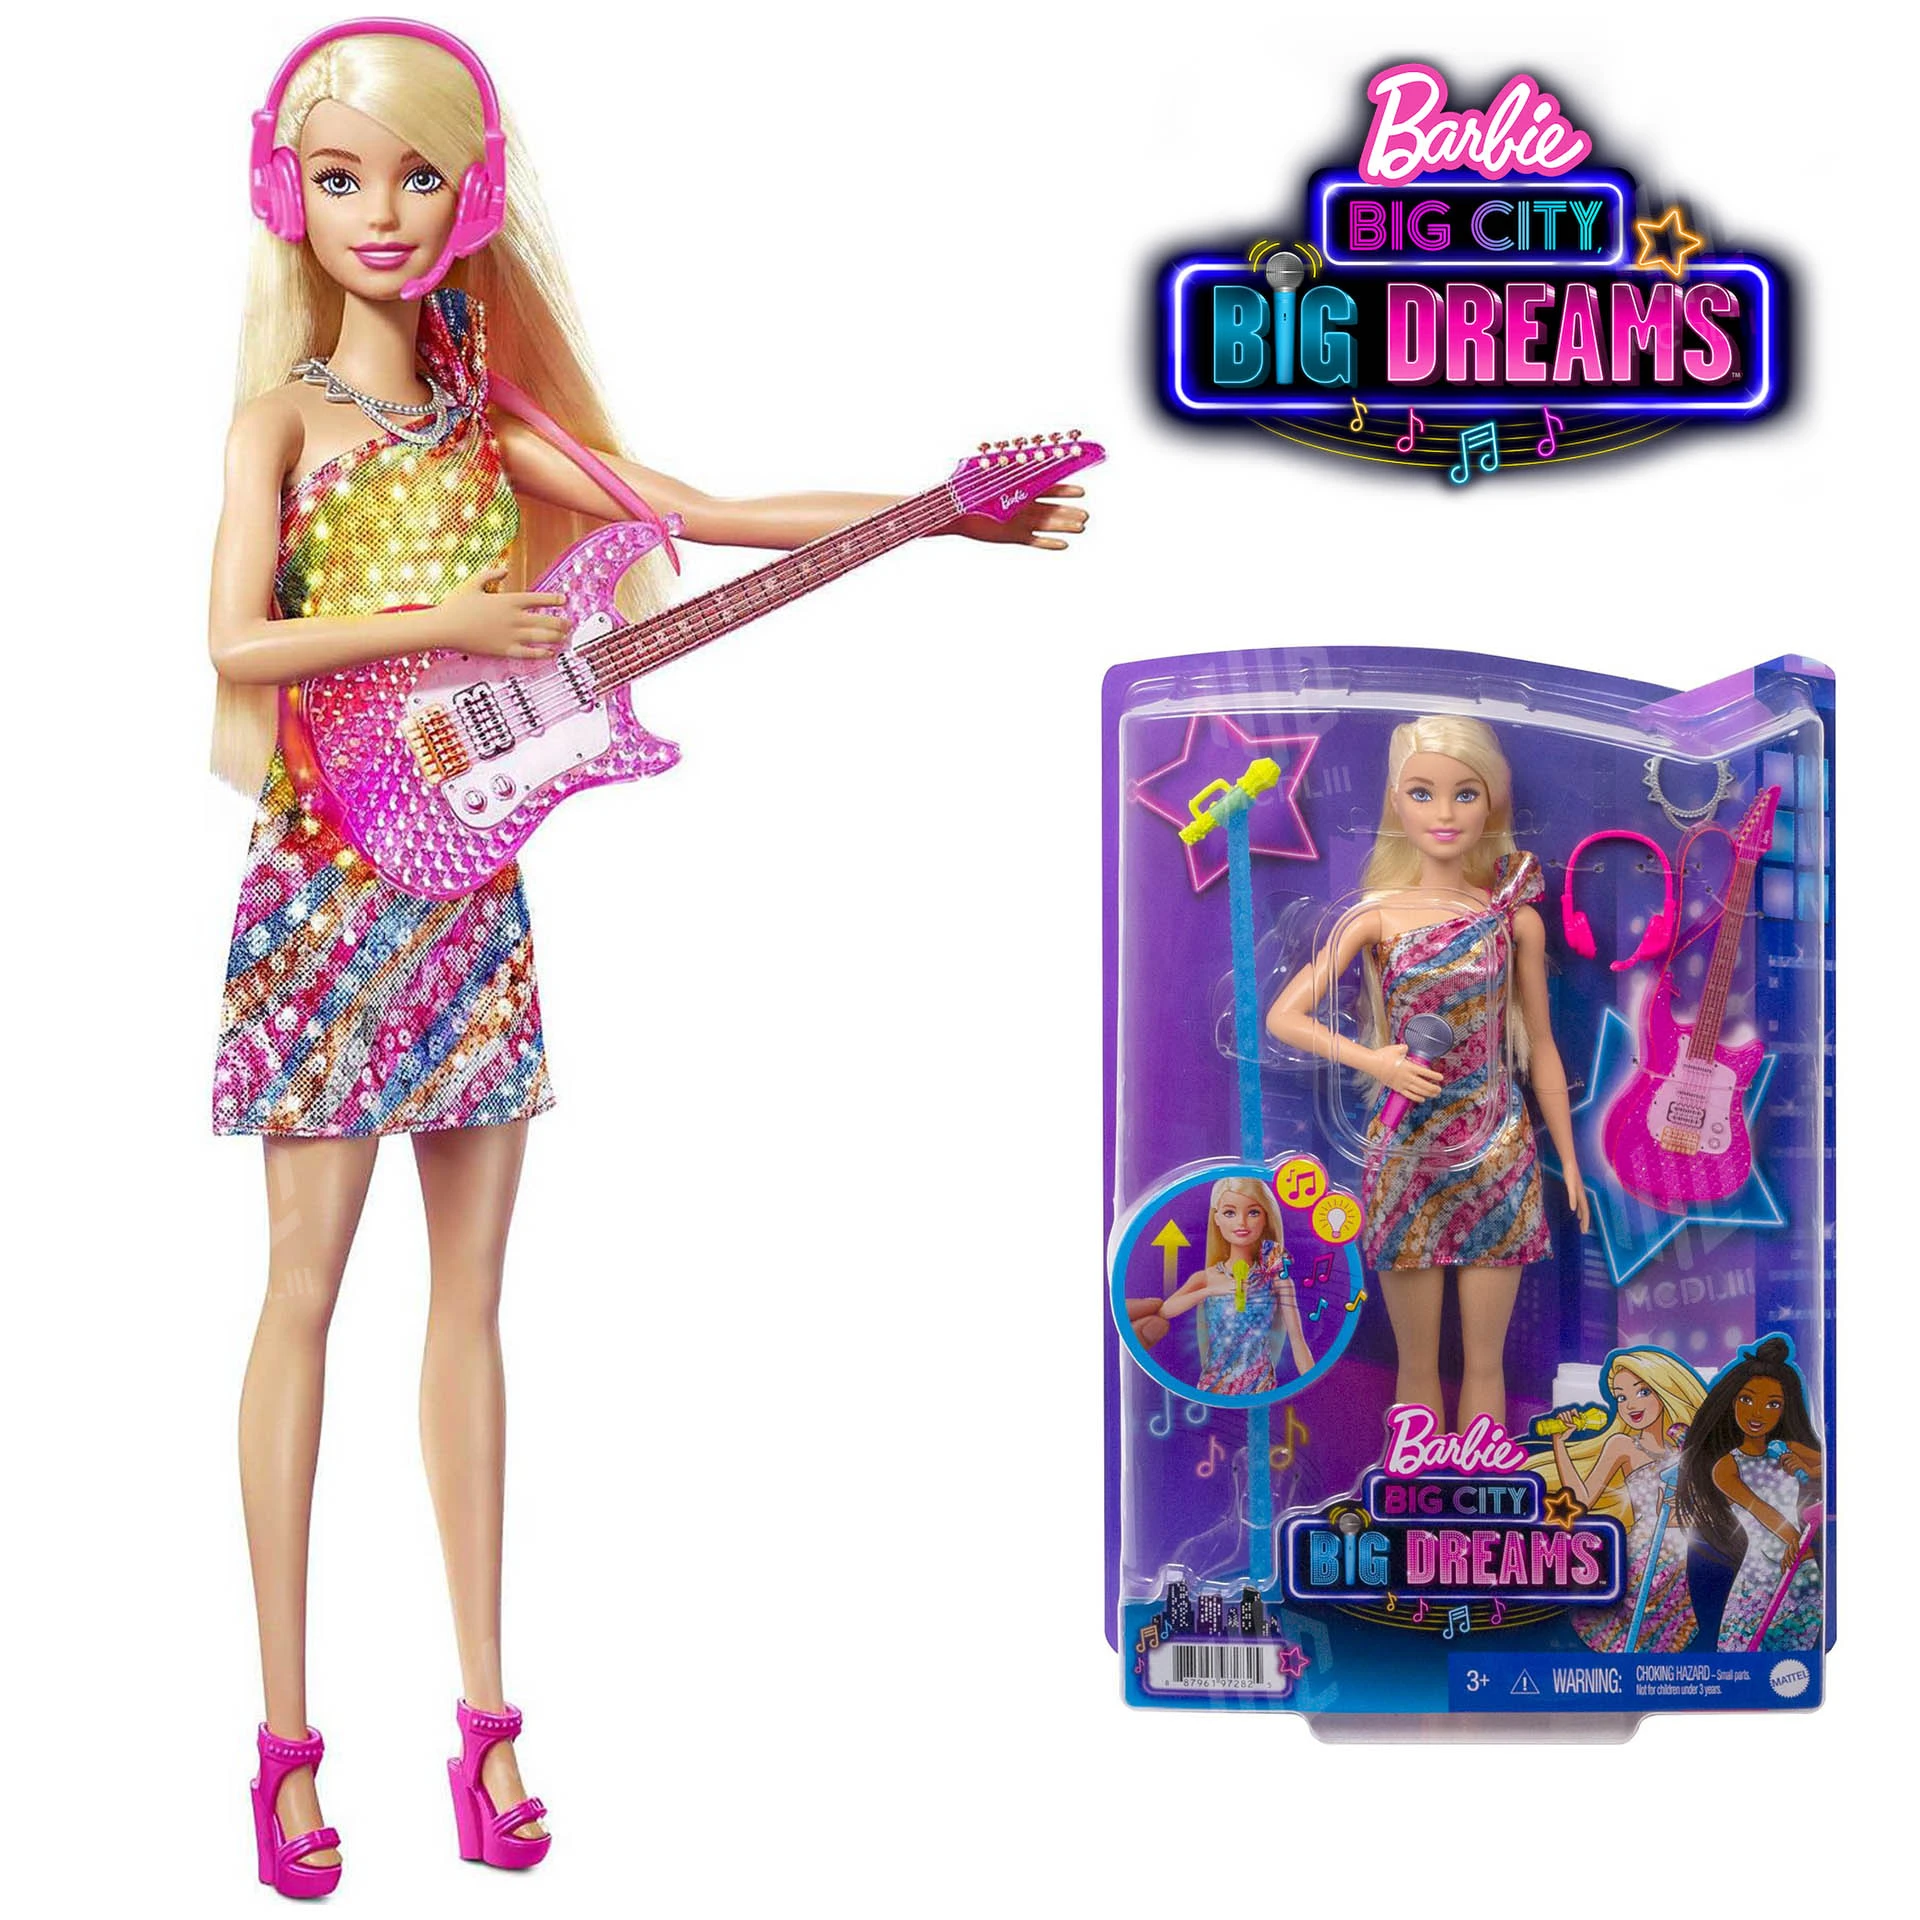 Excursie servet Onnodig Originele nieuwe barbie zingende barbie pop met muziek en licht grote stad,  grote dromen blonde pop barbie verzamelaar kinderspeelgoed cadeau voor  meisjes barbie accessoires geweldig voor cadeau|Poppen| - AliExpress